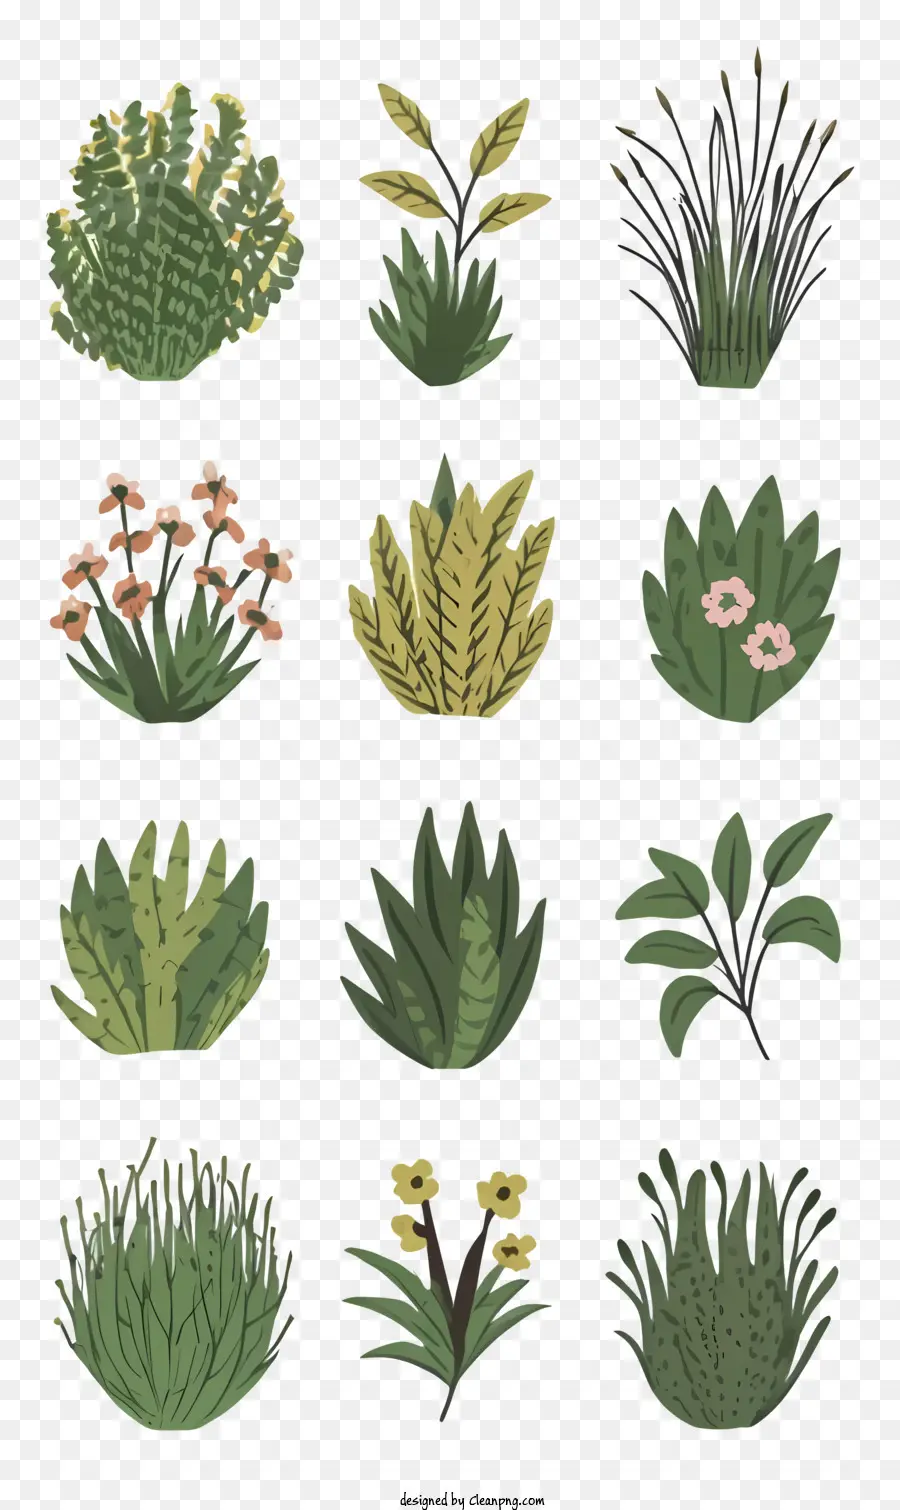 piante verdi felci lille gigli piante realistiche - Piante realistiche e diverse disposte organicamente con complessità